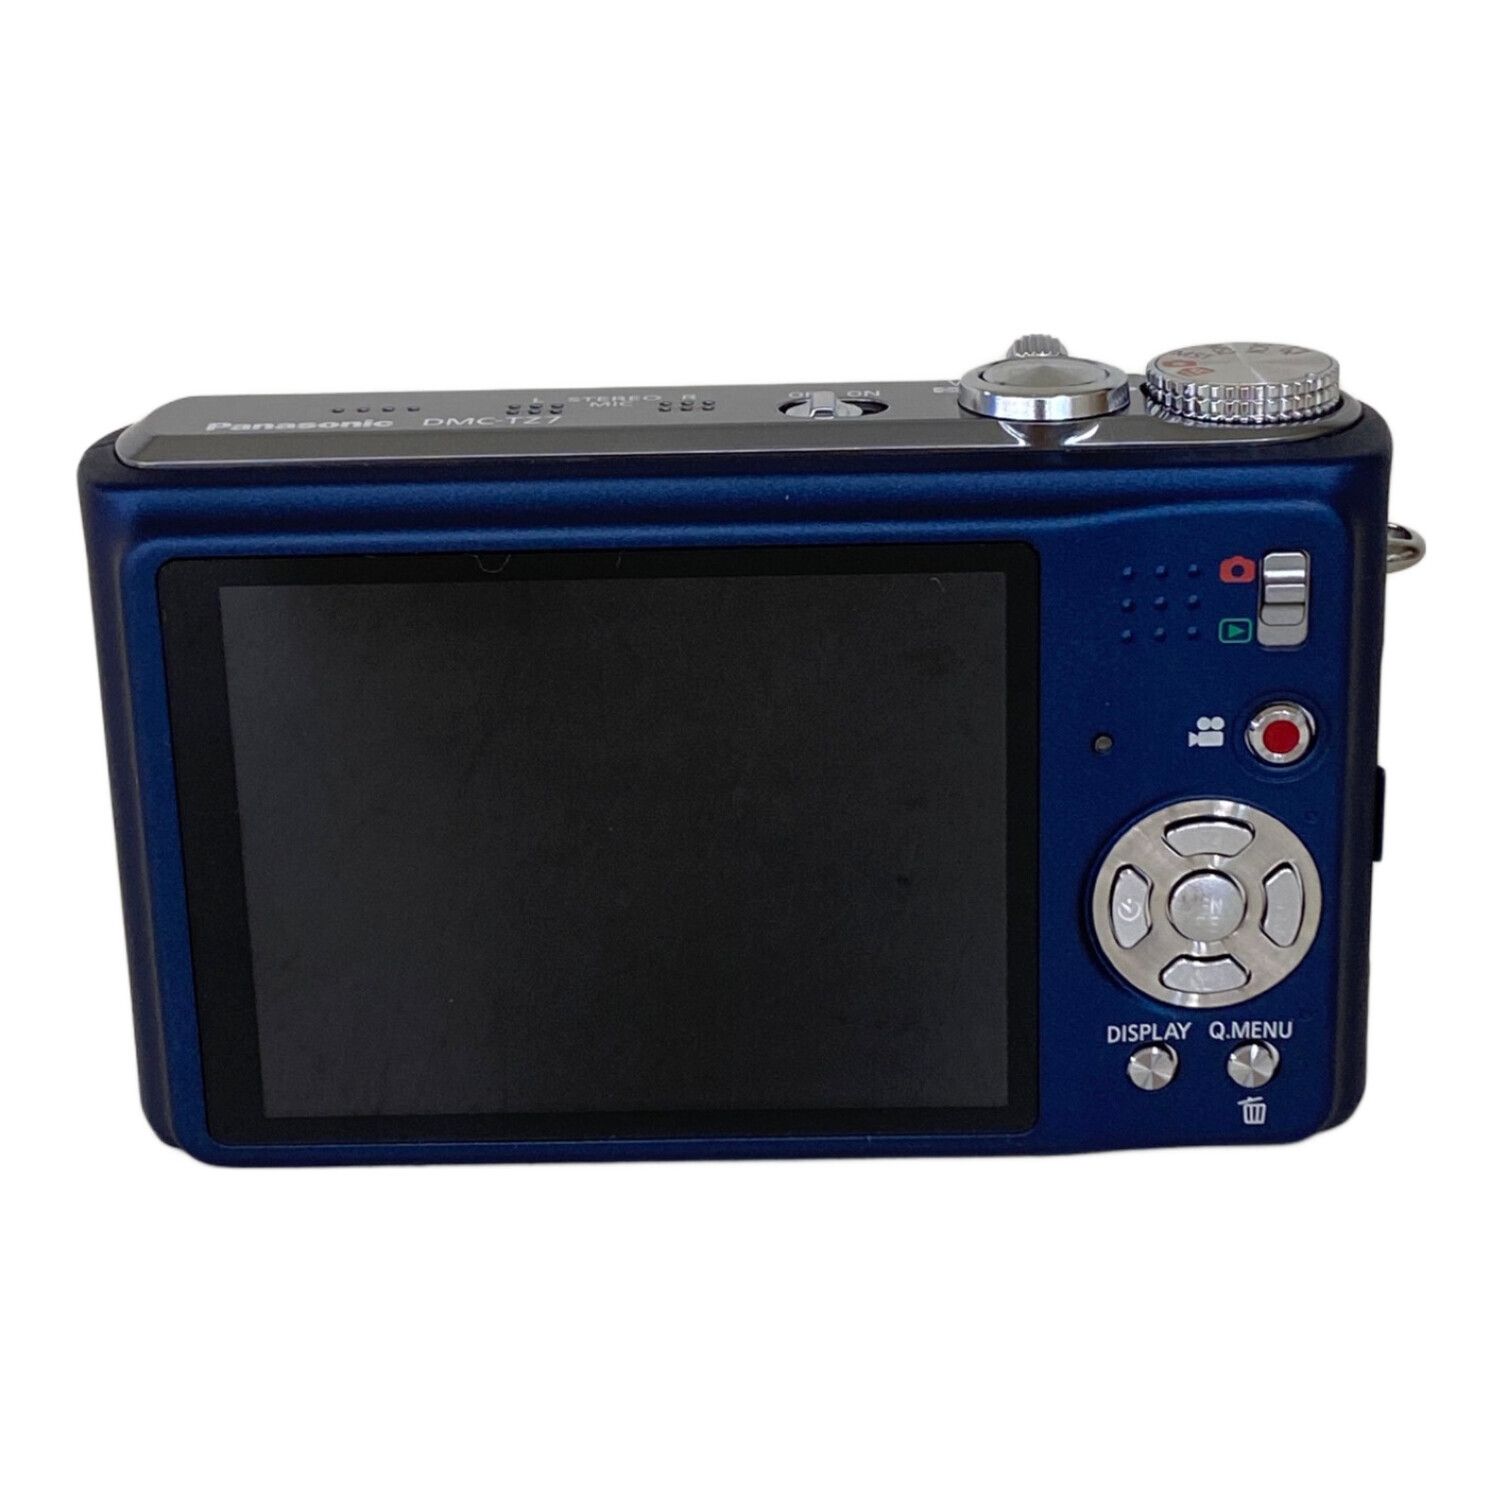 Panasonic (パナソニック) コンパクトデジタルカメラ 充電器付 DMC-TZ7 